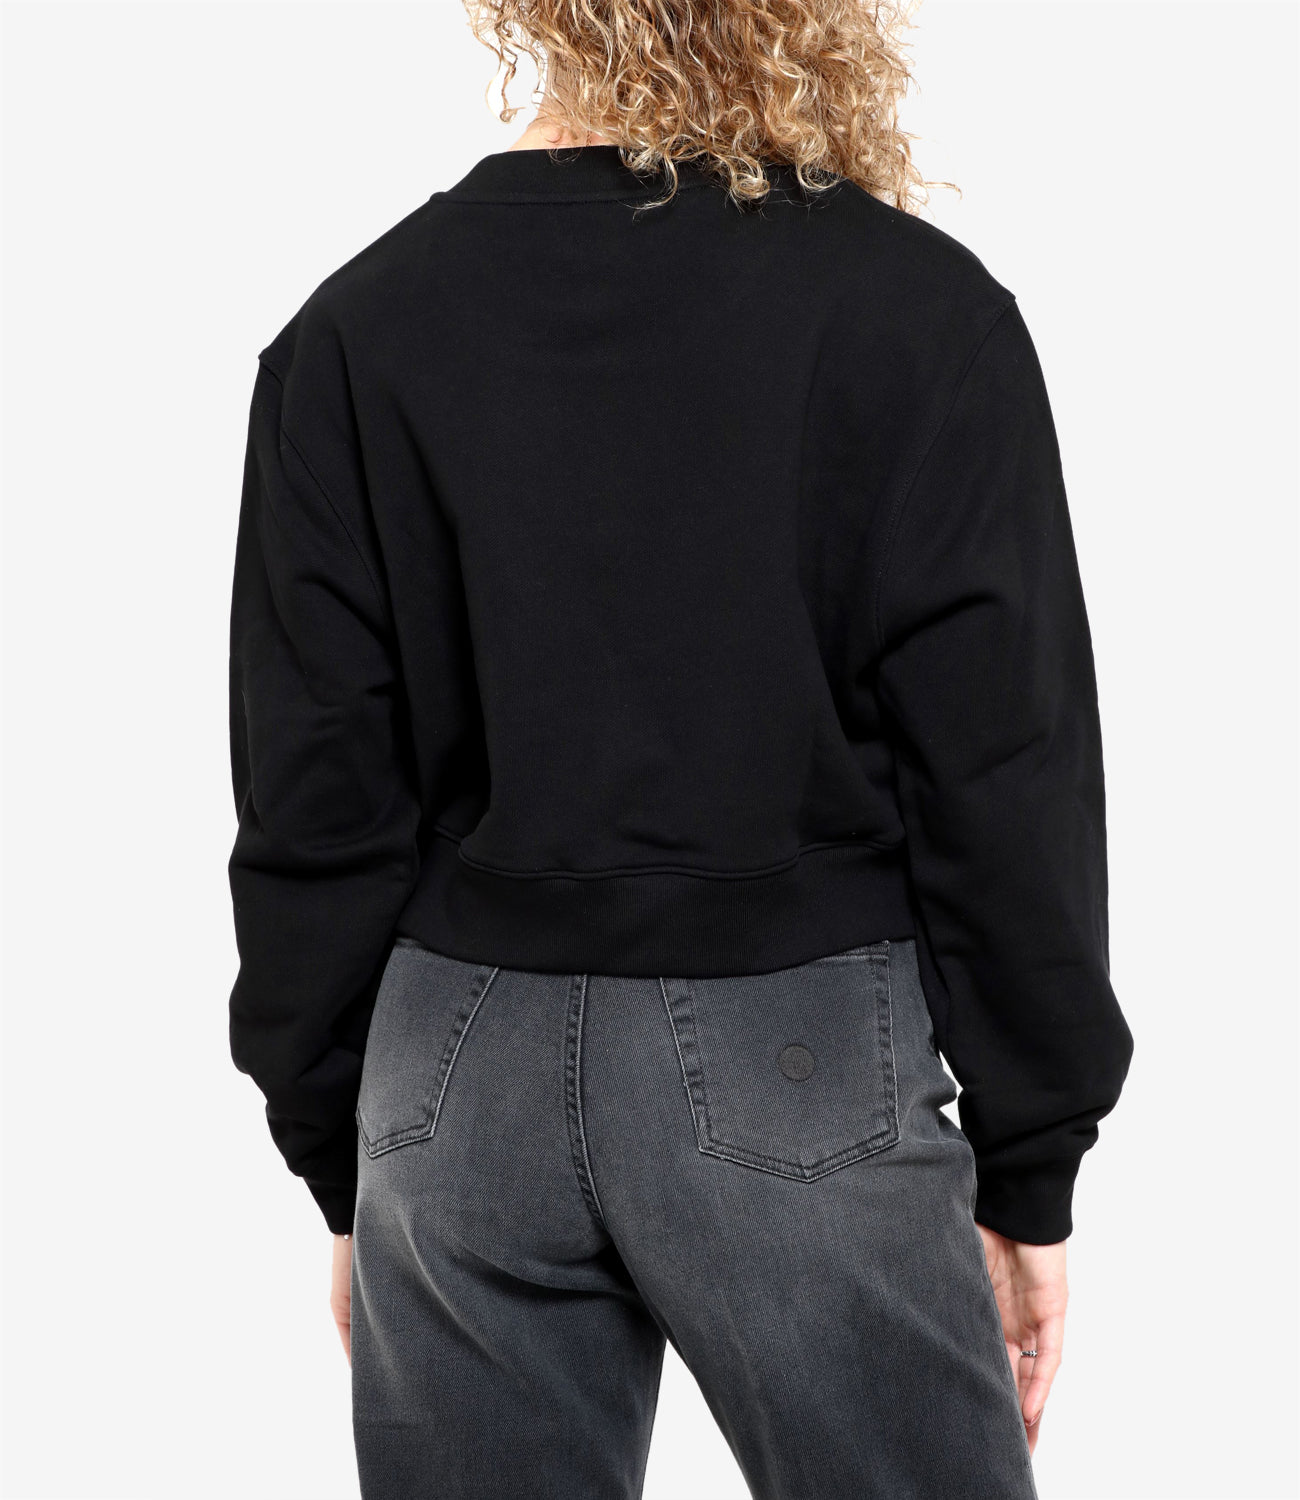 Moschino | Sweatshirt Black